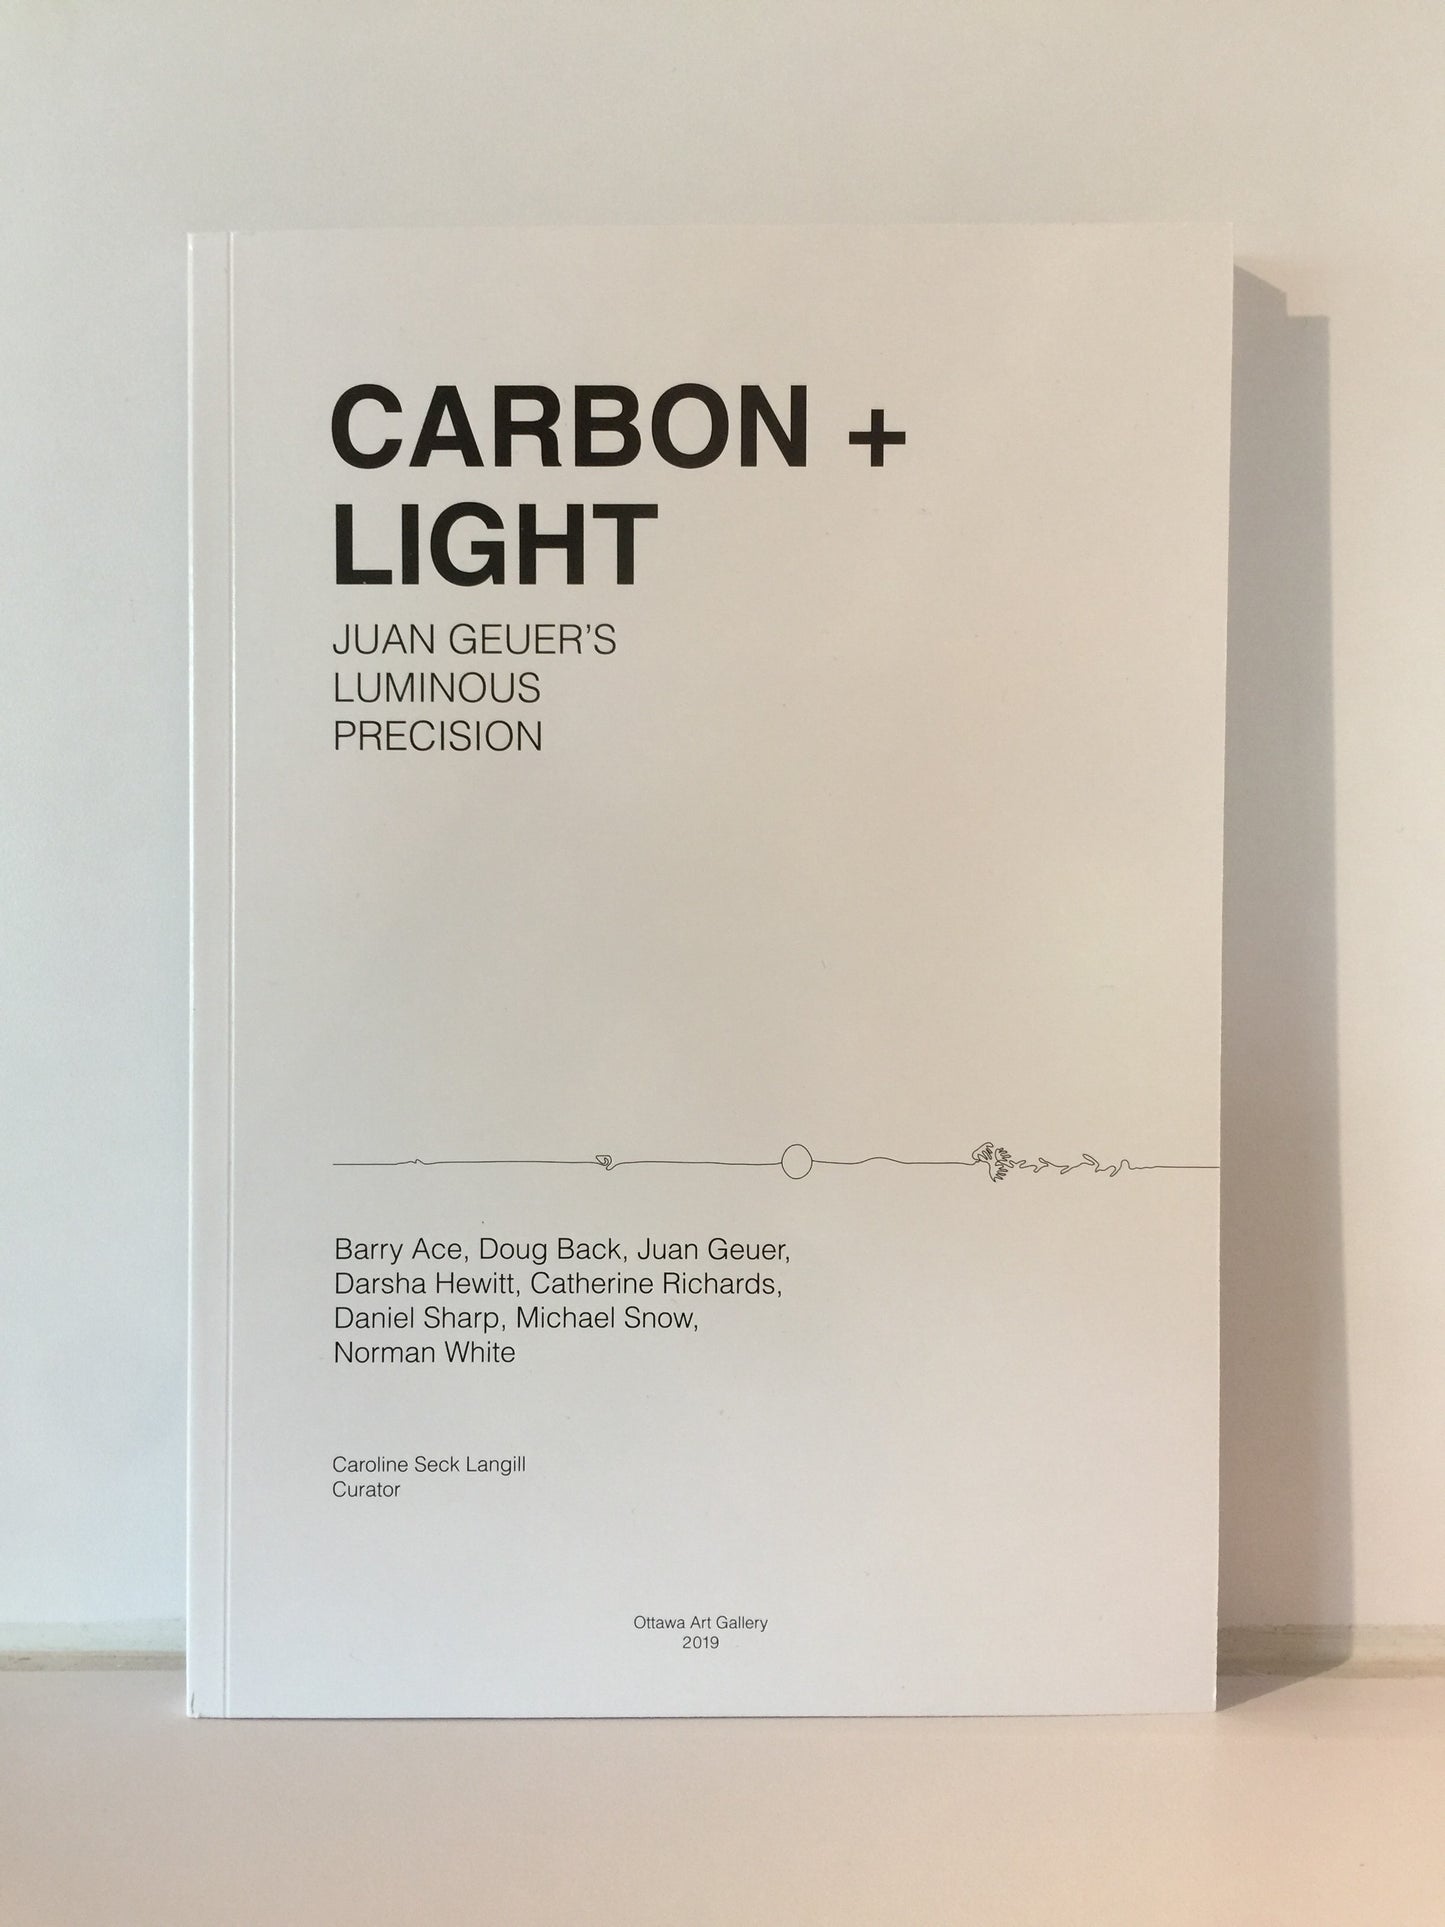 CARBON + LIGHT: JUAN GEUER'S LUMINOUS PRECISION